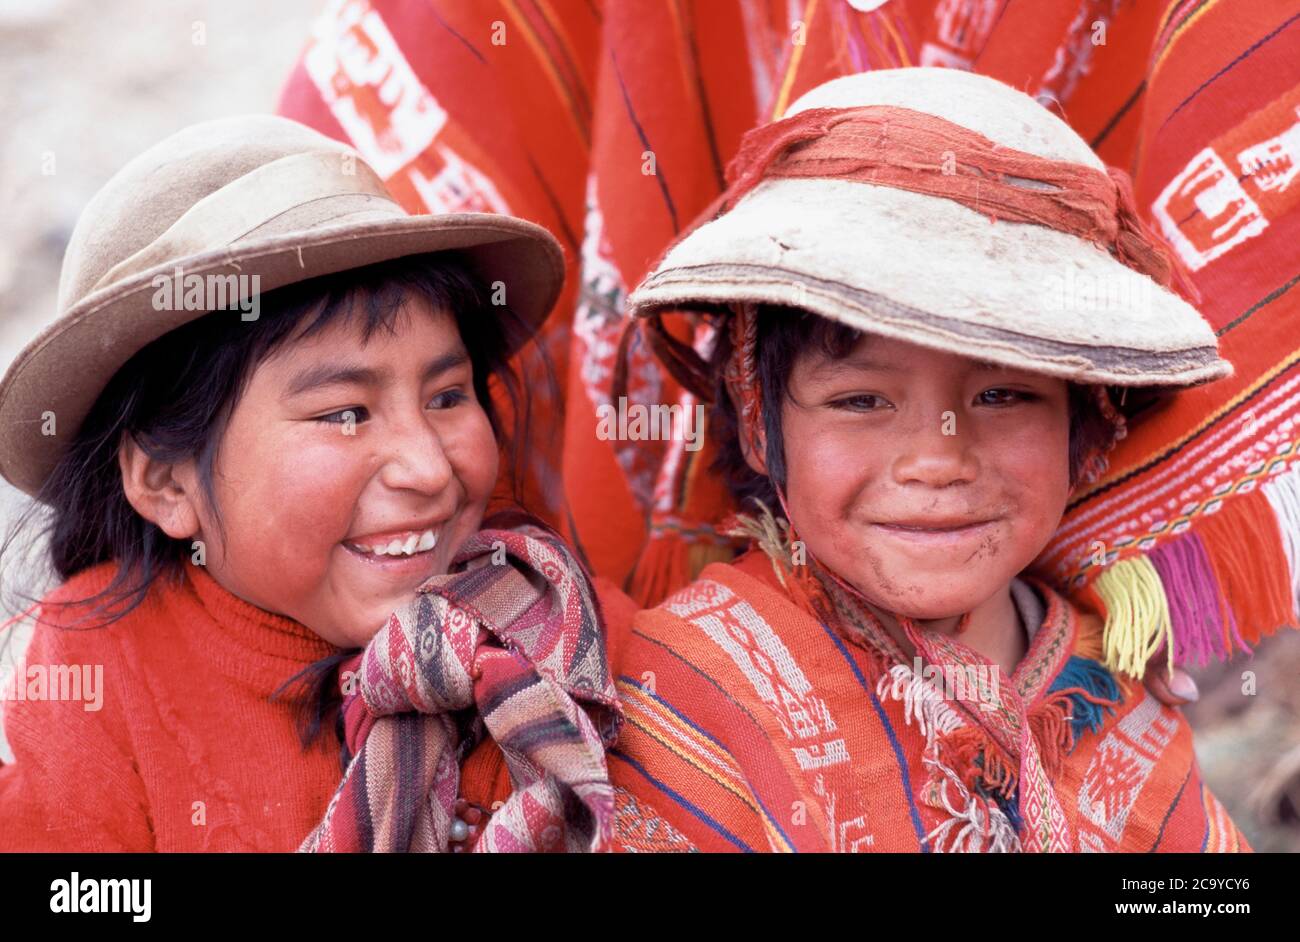 Niños peruanos sonriendo en traje tradicional, Cusco, Perú, Sudamérica Foto de stock